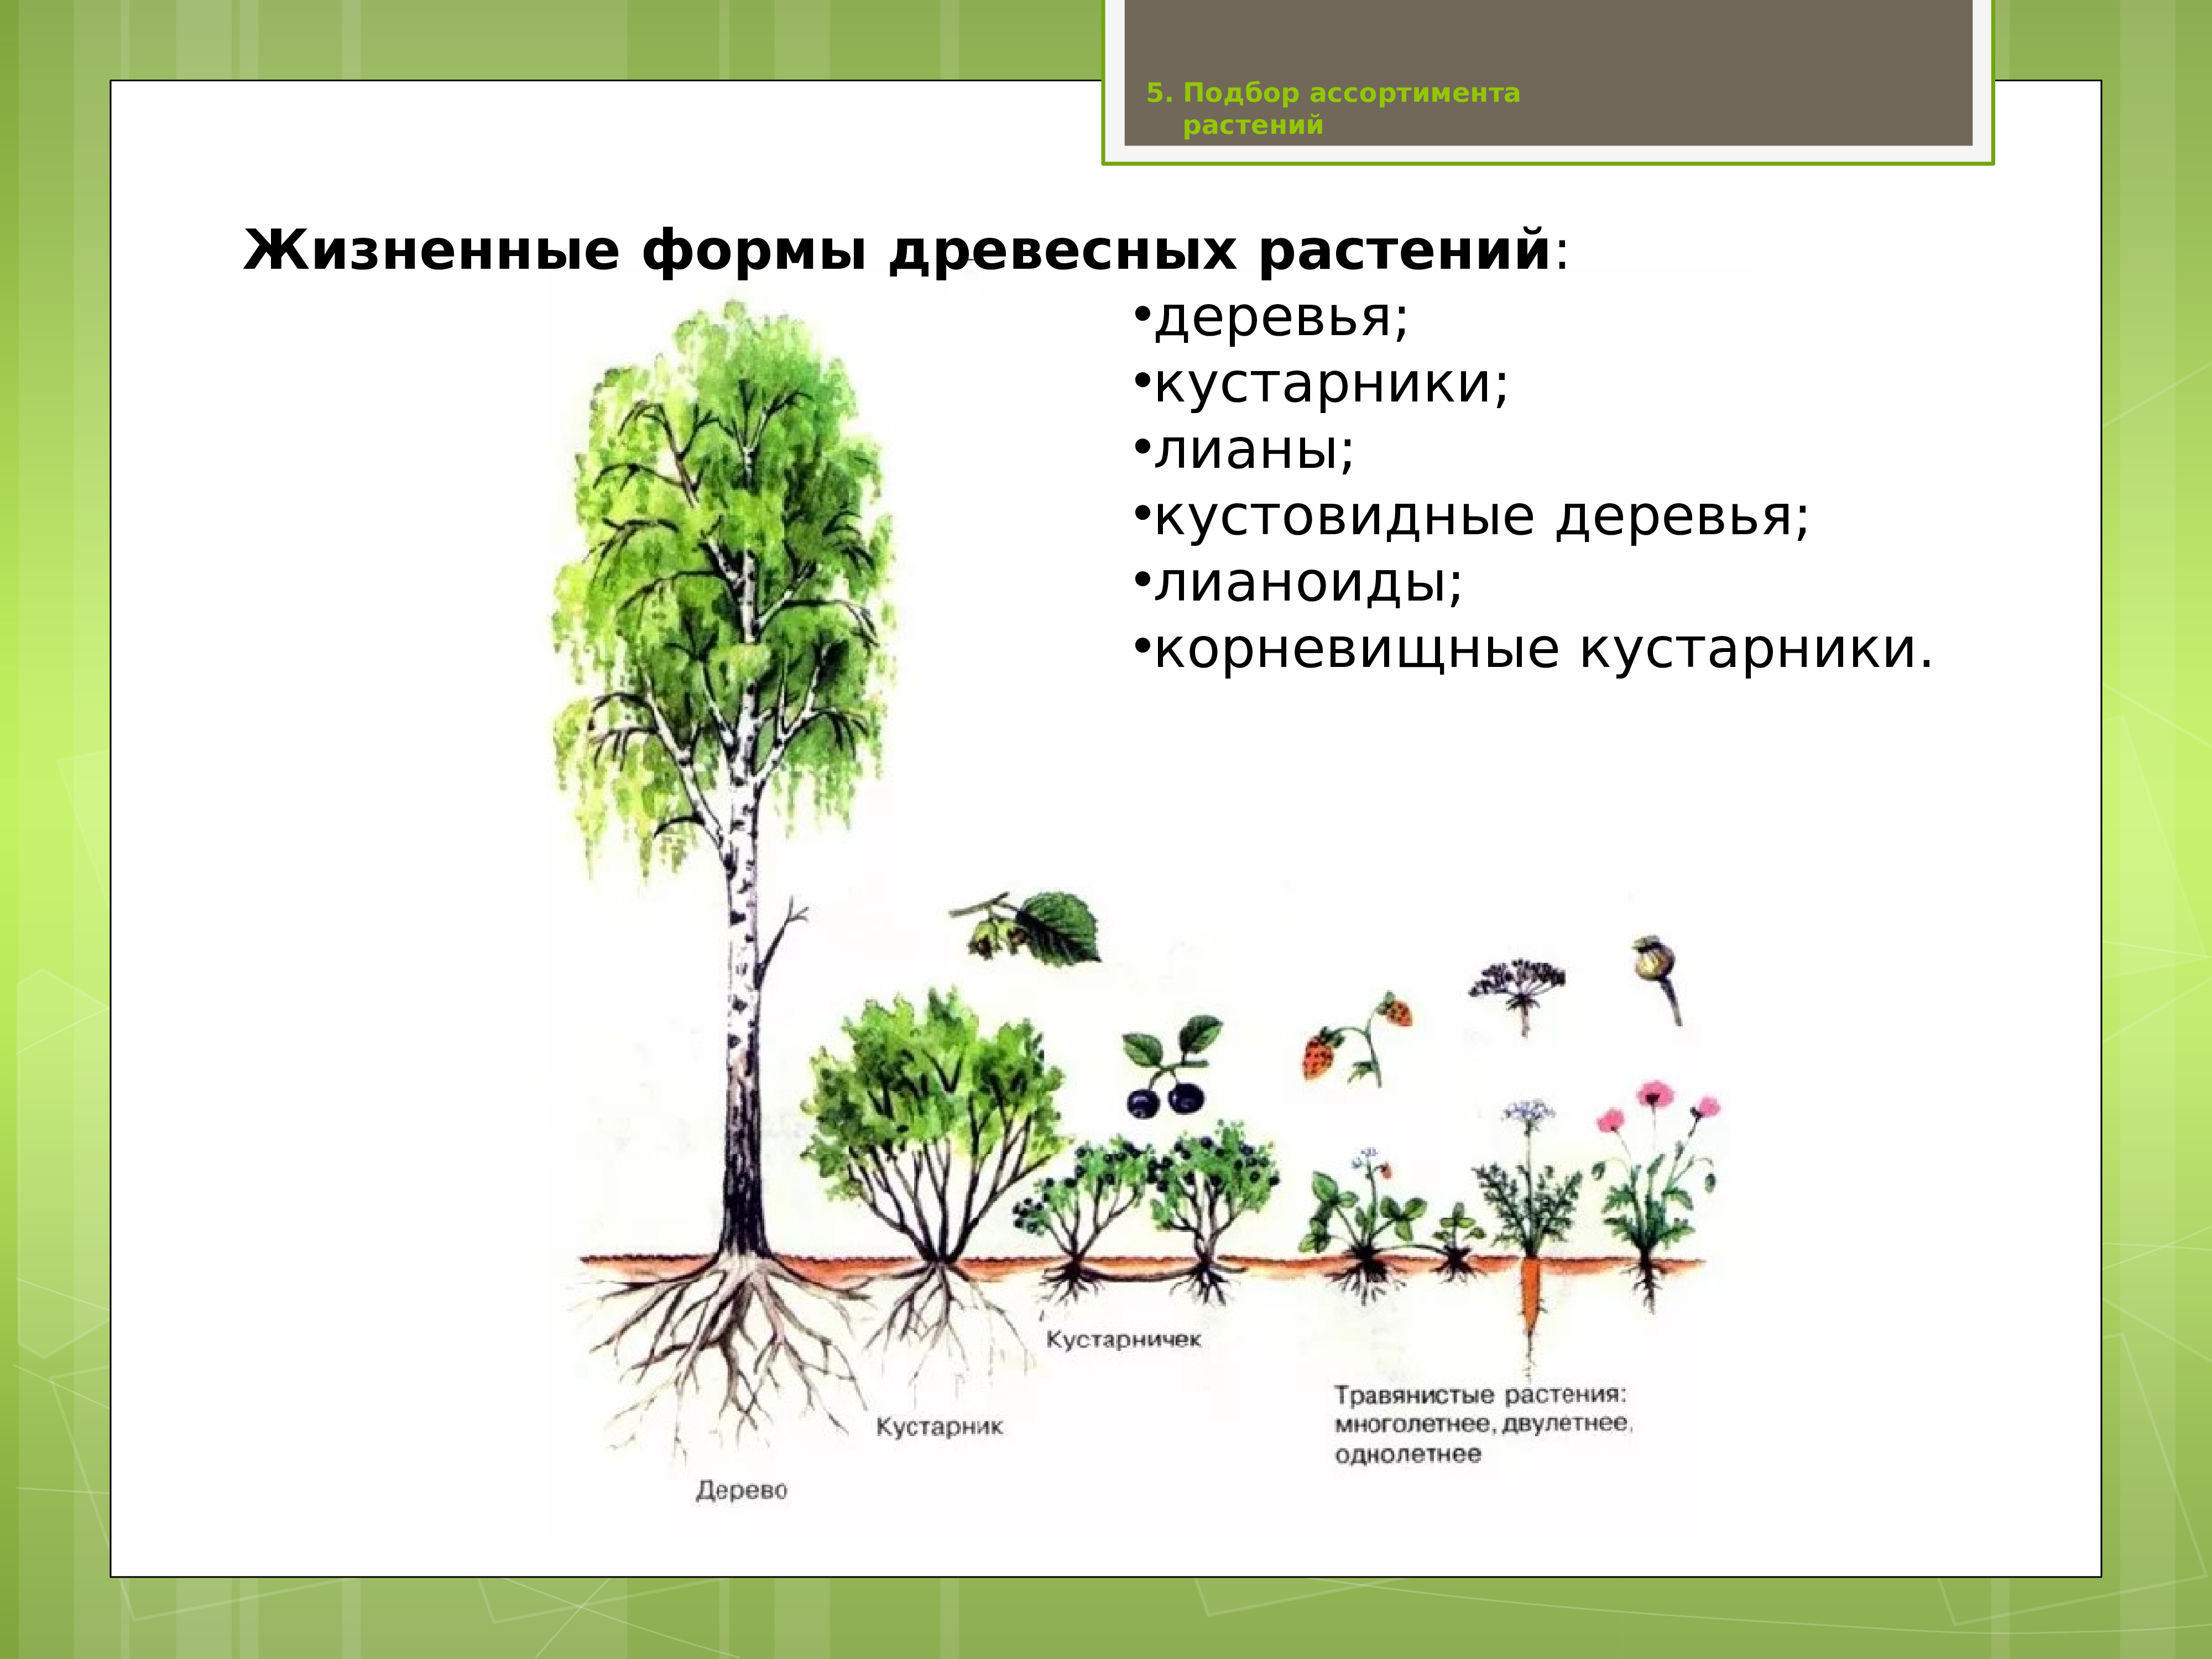 Классификация жизненных форм древесных растений